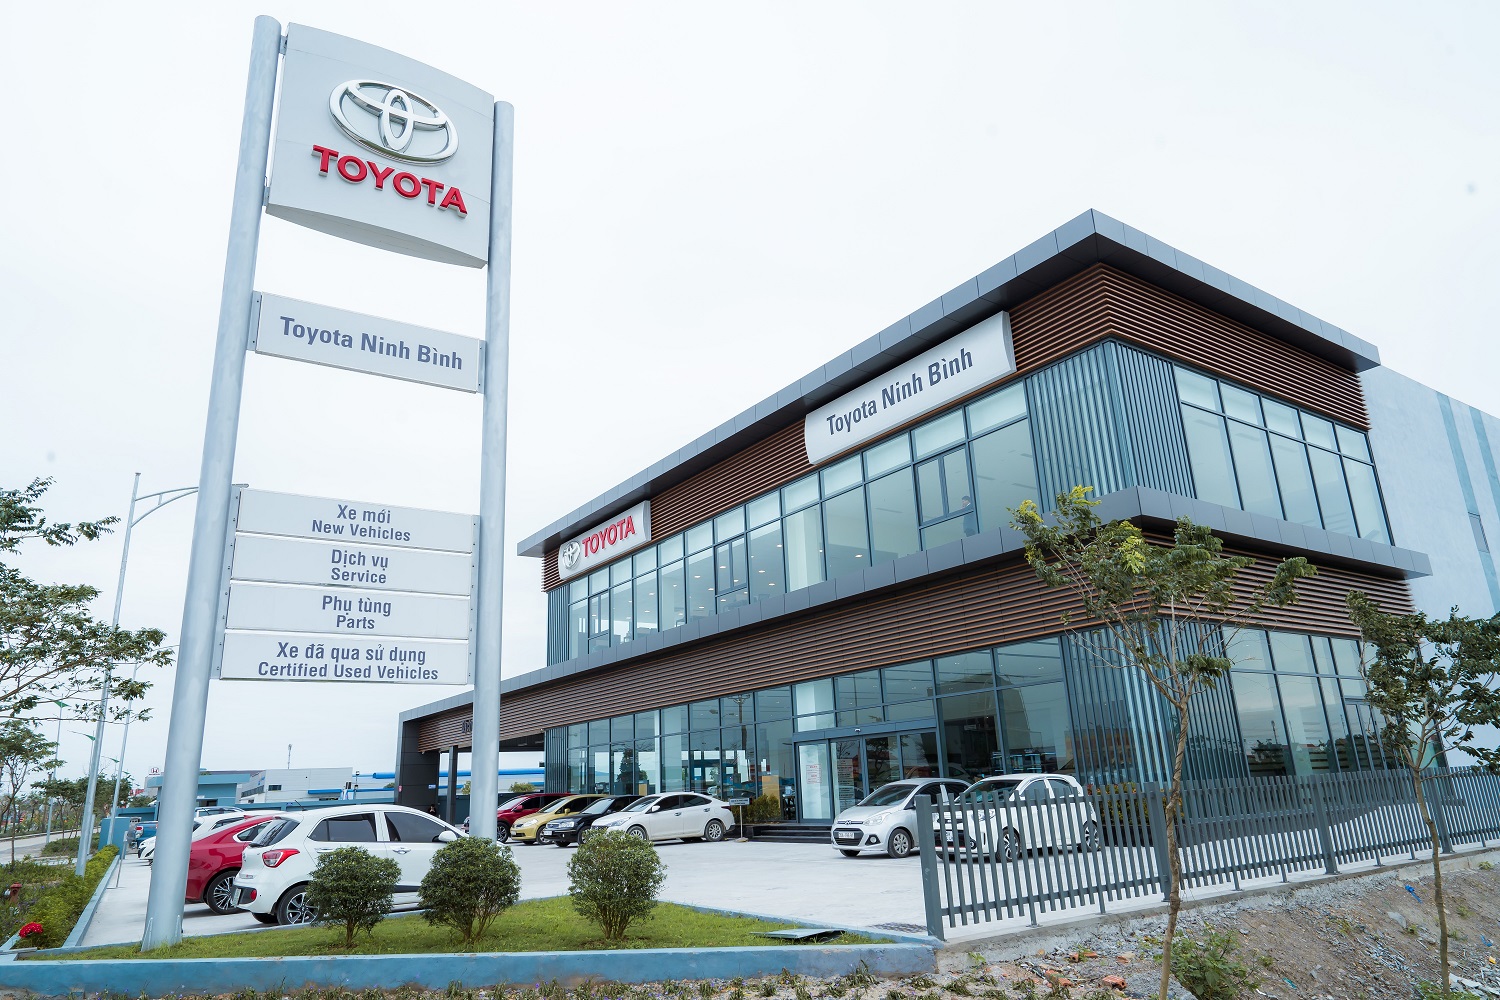 Toyota Việt Nam khai trương đại lý Toyota Ninh Bình